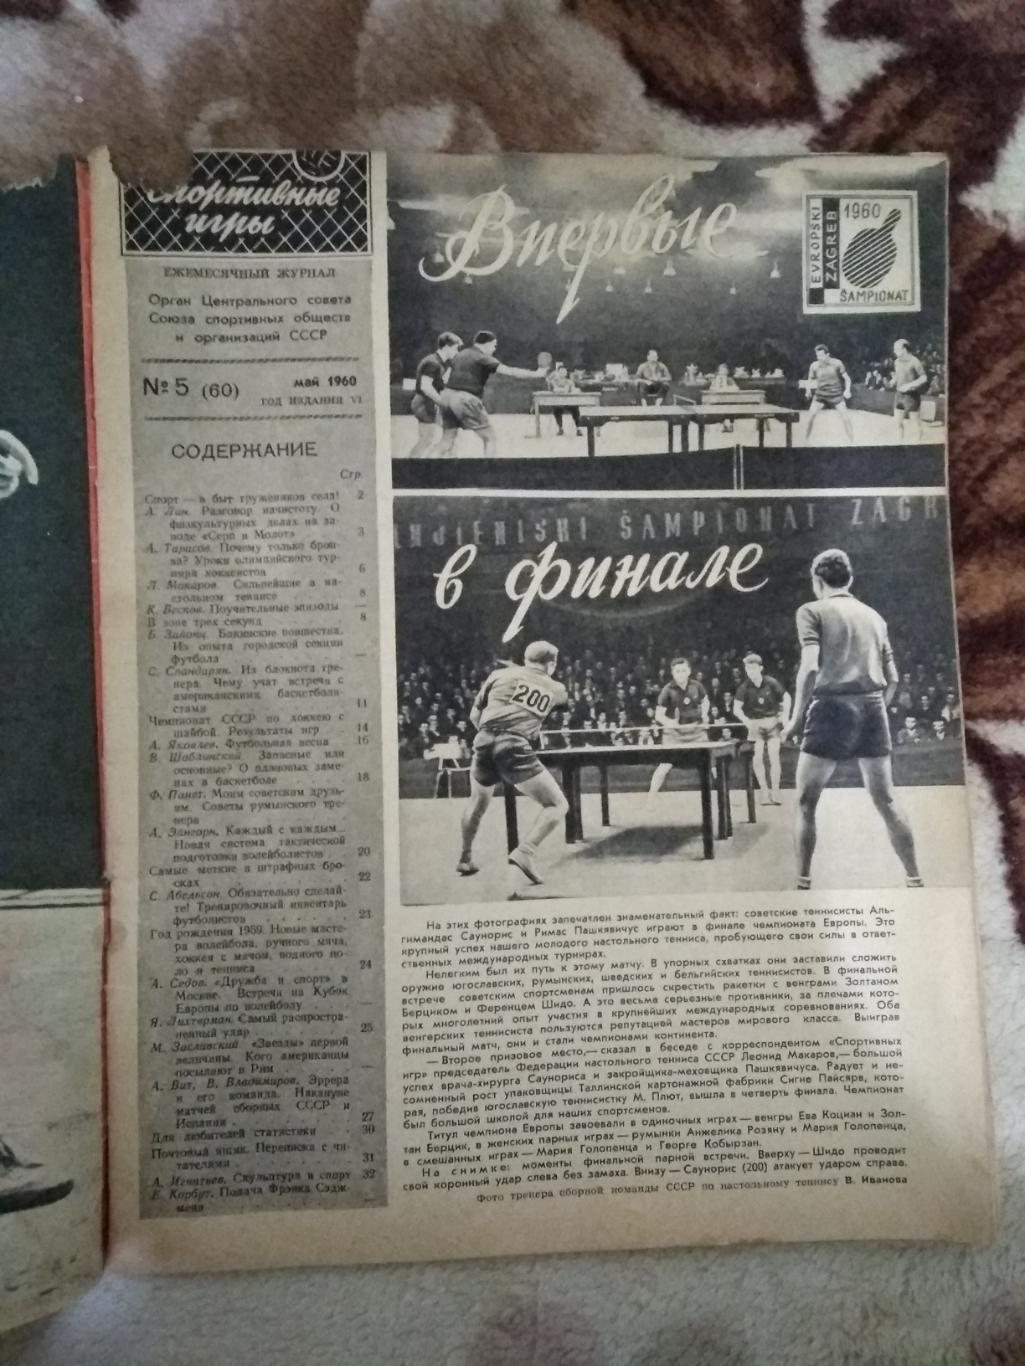 Журнал. Спортивные игры № 5 1960 г. 1